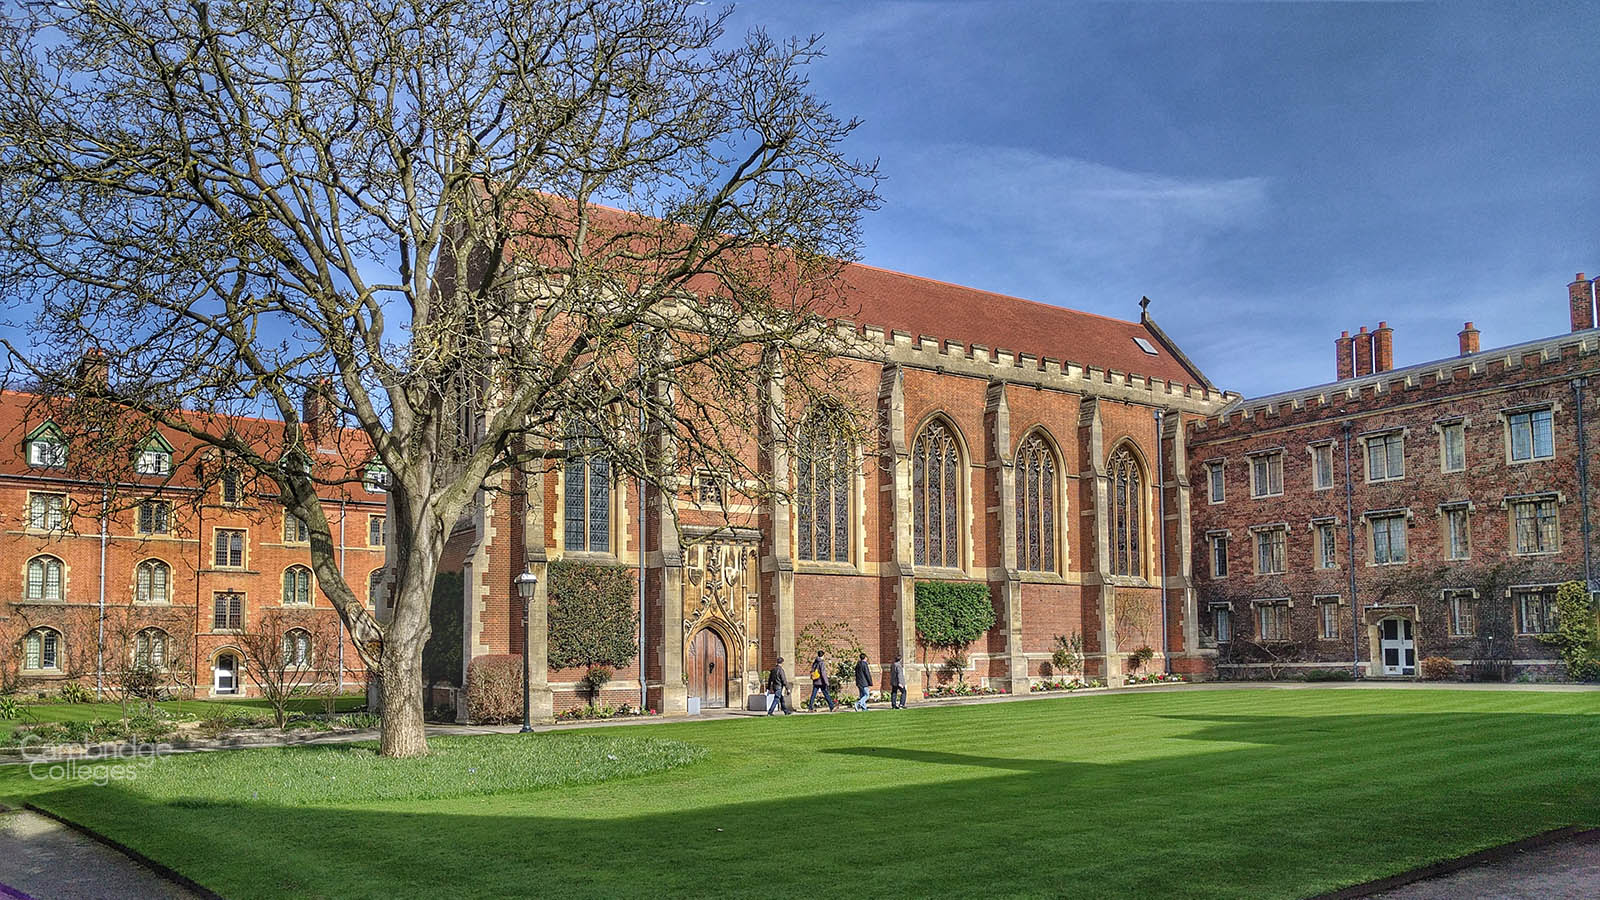 Walnut tree court, Queen's college Cambridge